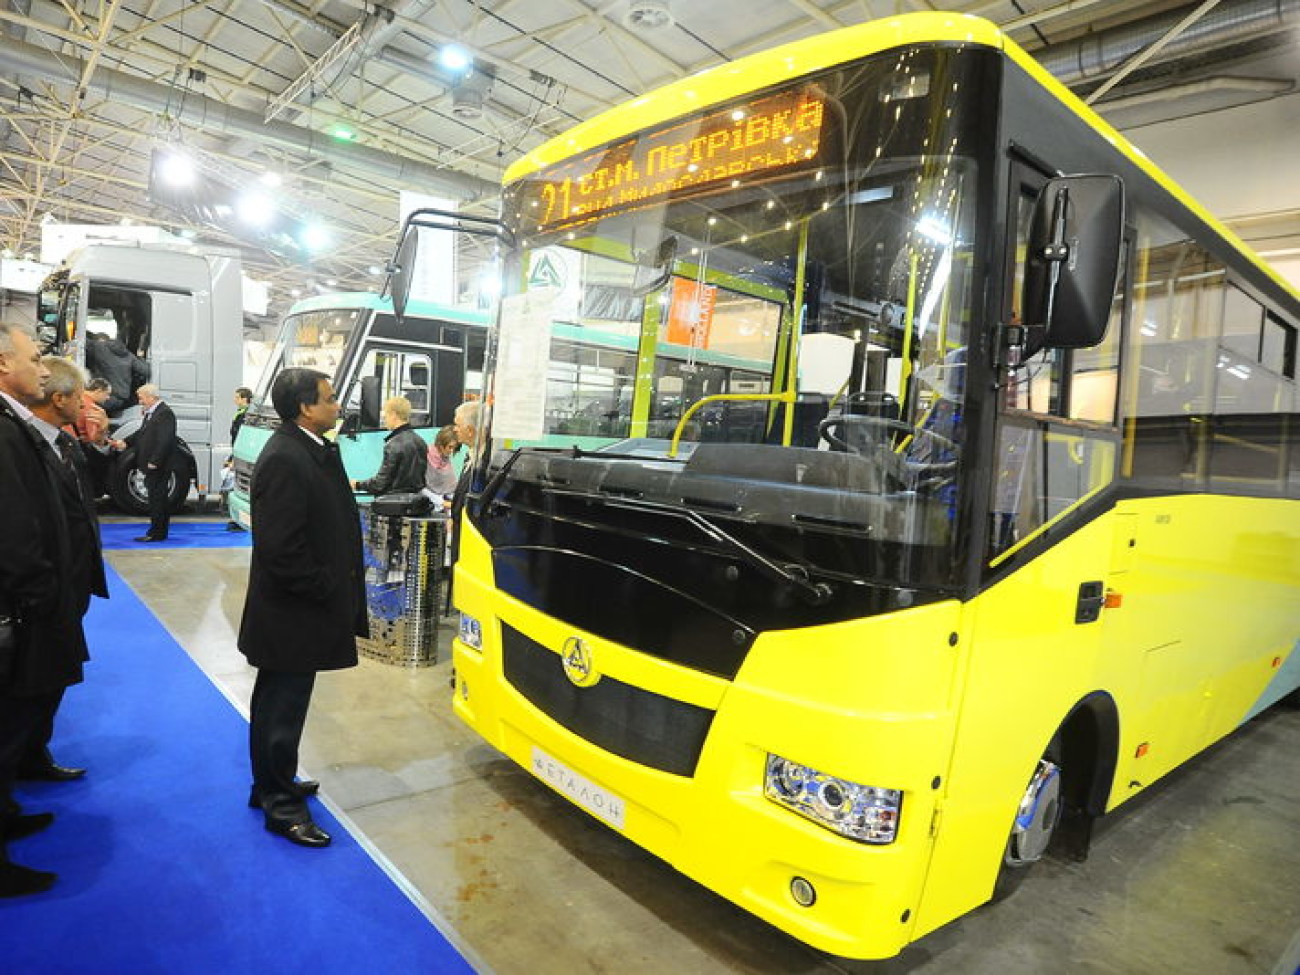 В Киеве открылся Международный автосалон грузовиков, 9 октября 2013г.